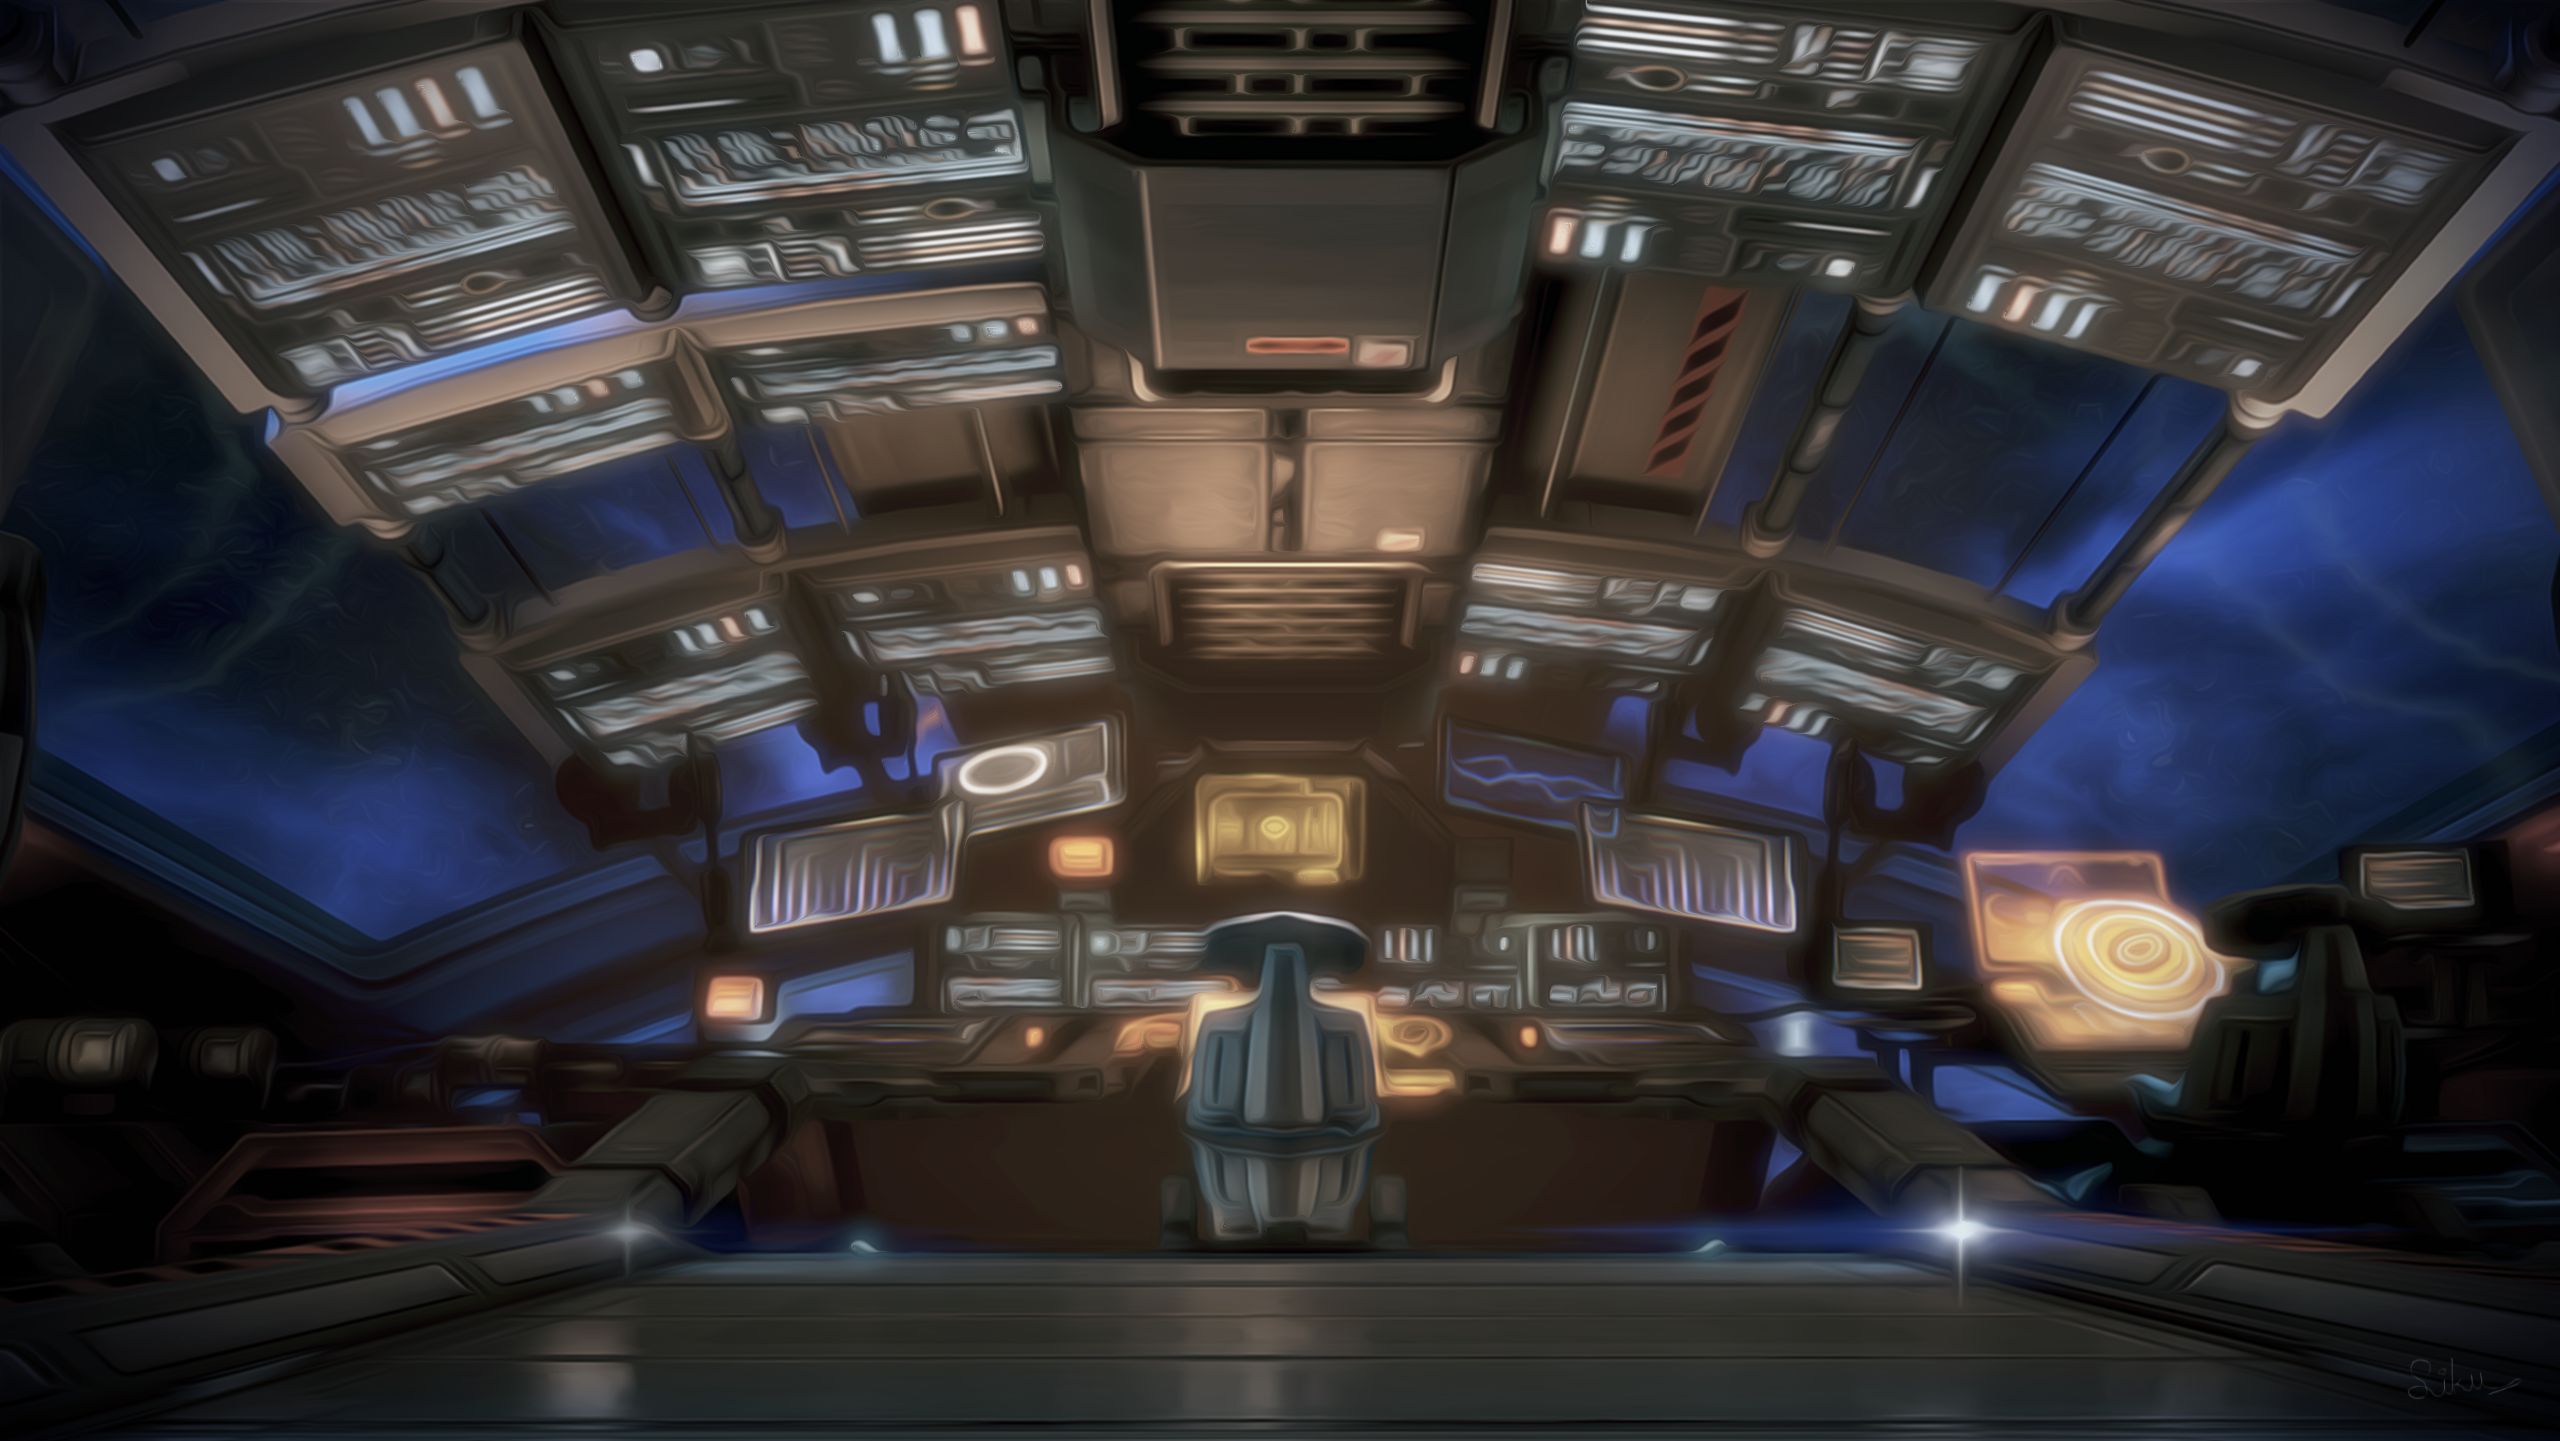 Descarga gratis la imagen Mass Effect, Videojuego, Mass Effect 3 en el escritorio de tu PC